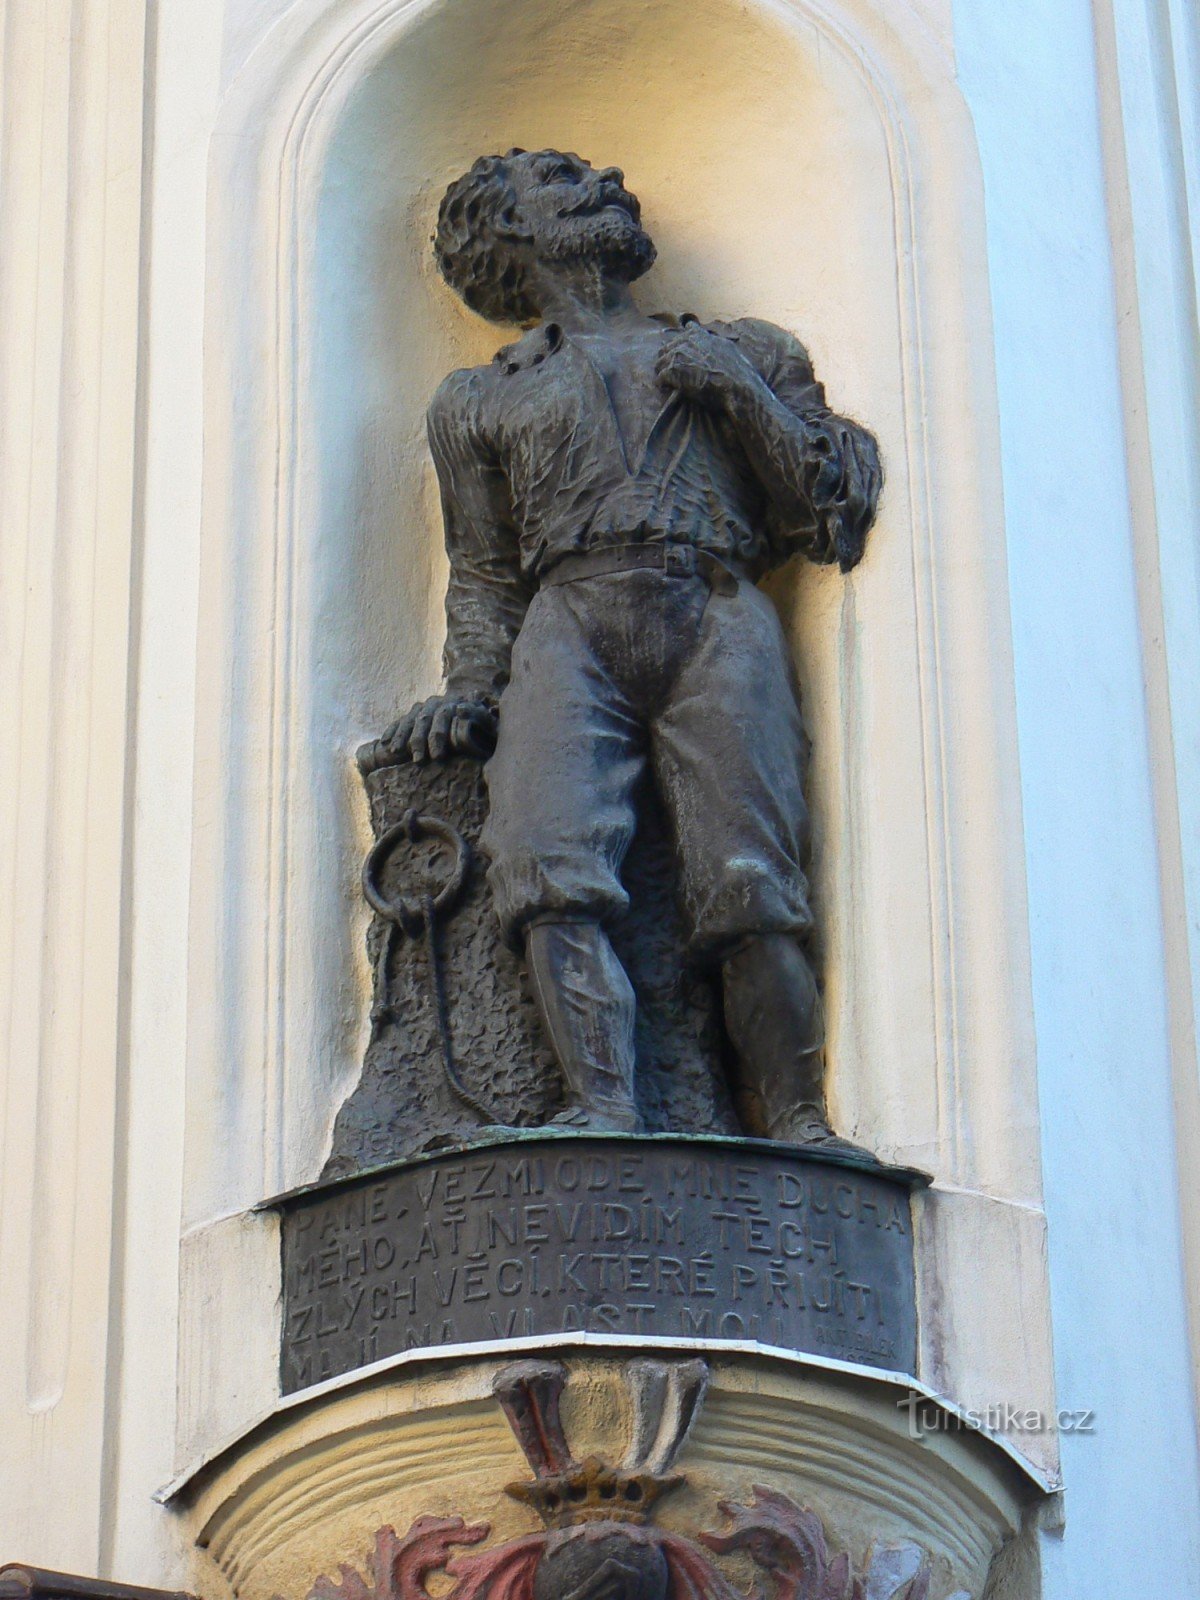 Άγαλμα του Václav Budovec από το Budov